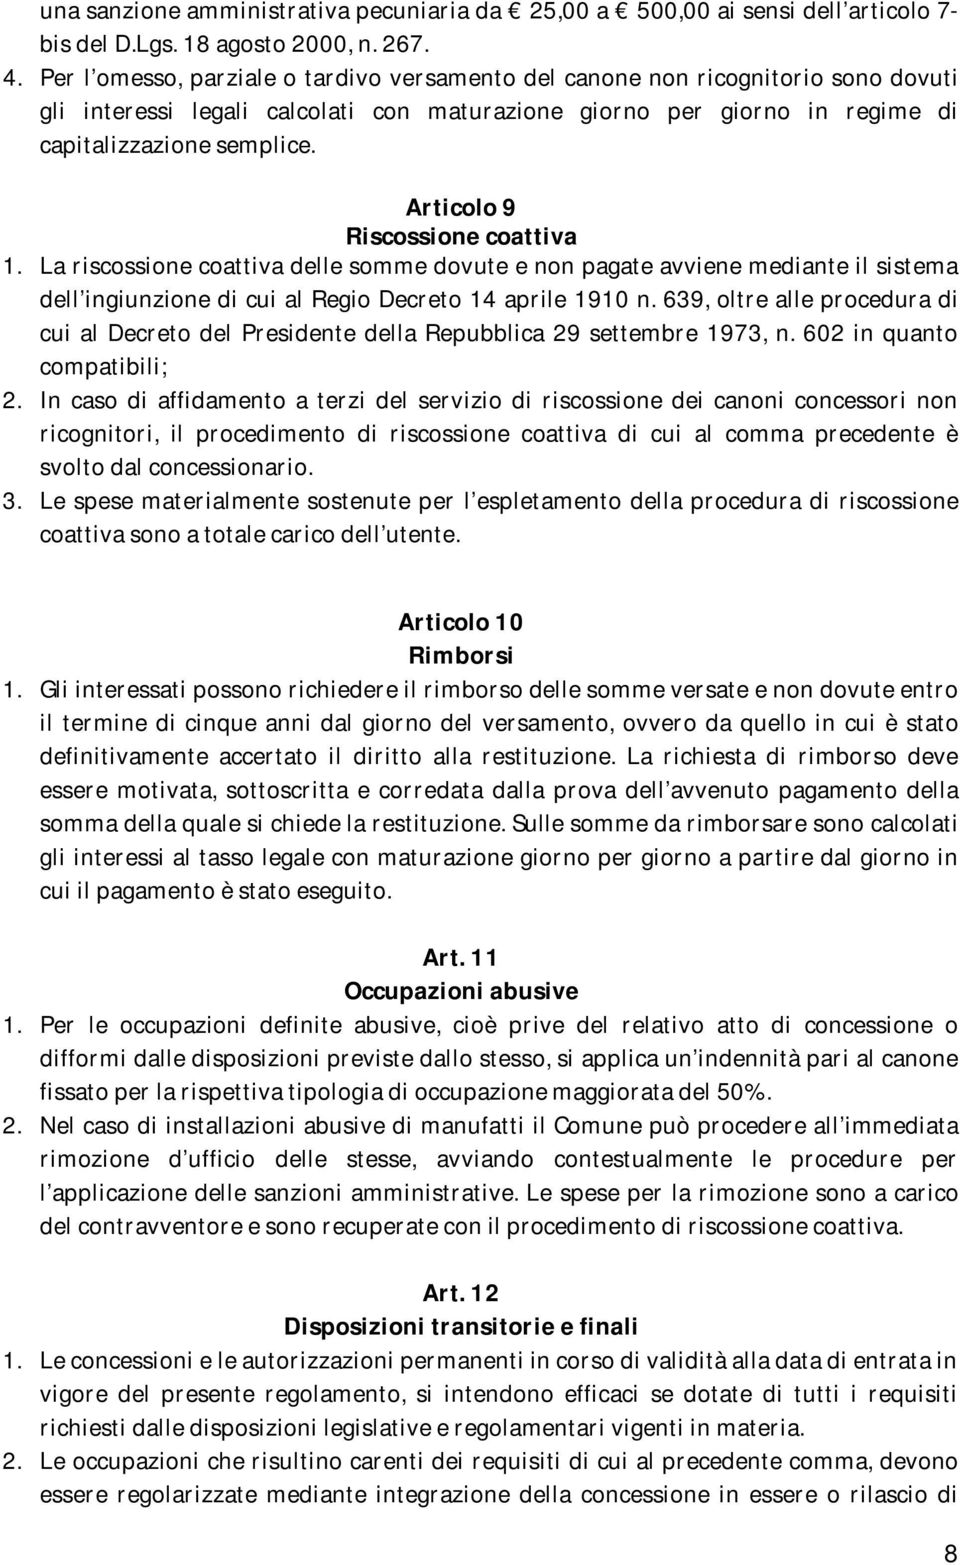 Articolo 9 Riscossione coattiva 1. La riscossione coattiva delle somme dovute e non pagate avviene mediante il sistema dell ingiunzione di cui al Regio Decreto 14 aprile 1910 n.